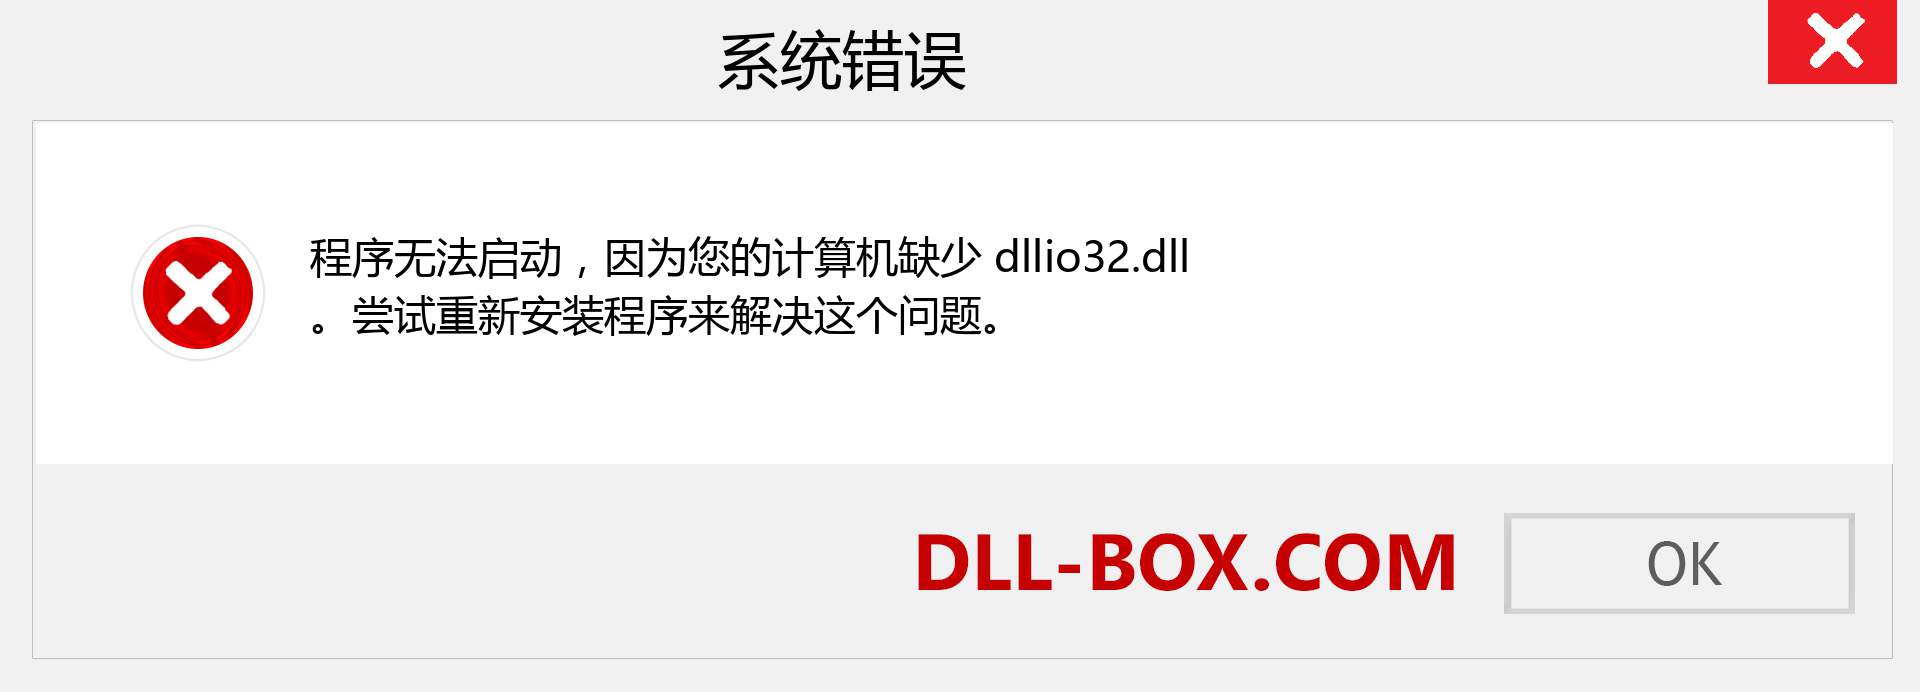 dllio32.dll 文件丢失？。 适用于 Windows 7、8、10 的下载 - 修复 Windows、照片、图像上的 dllio32 dll 丢失错误